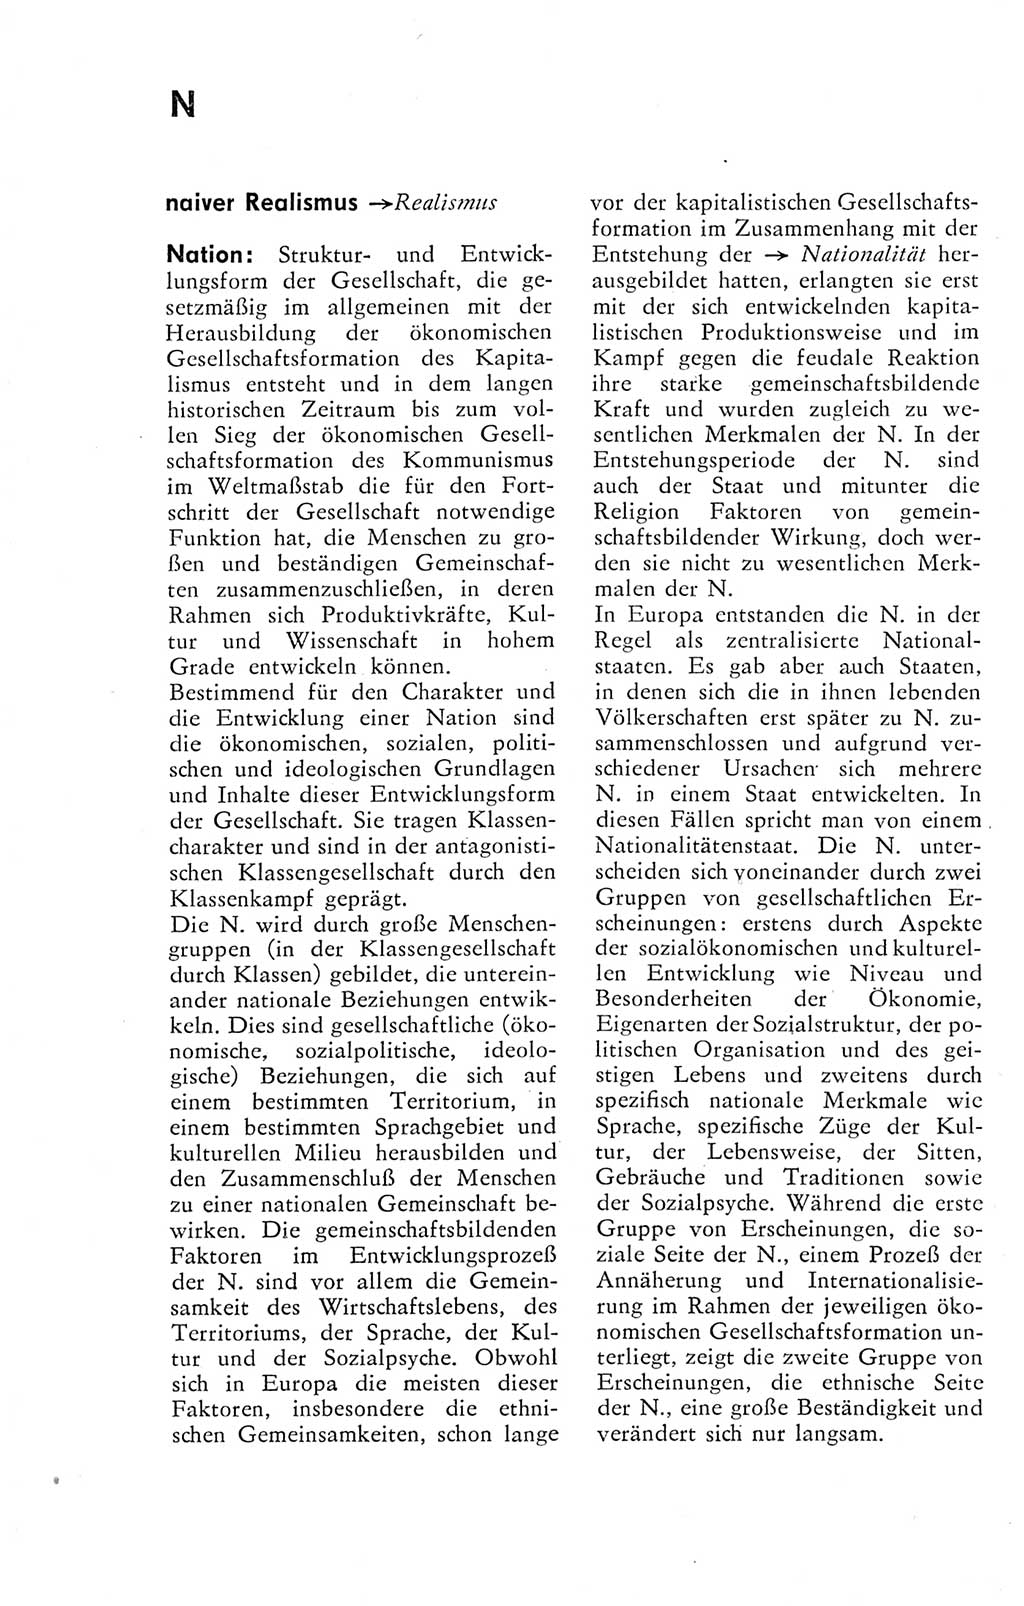 Kleines Wörterbuch der marxistisch-leninistischen Philosophie [Deutsche Demokratische Republik (DDR)] 1974, Seite 192 (Kl. Wb. ML Phil. DDR 1974, S. 192)